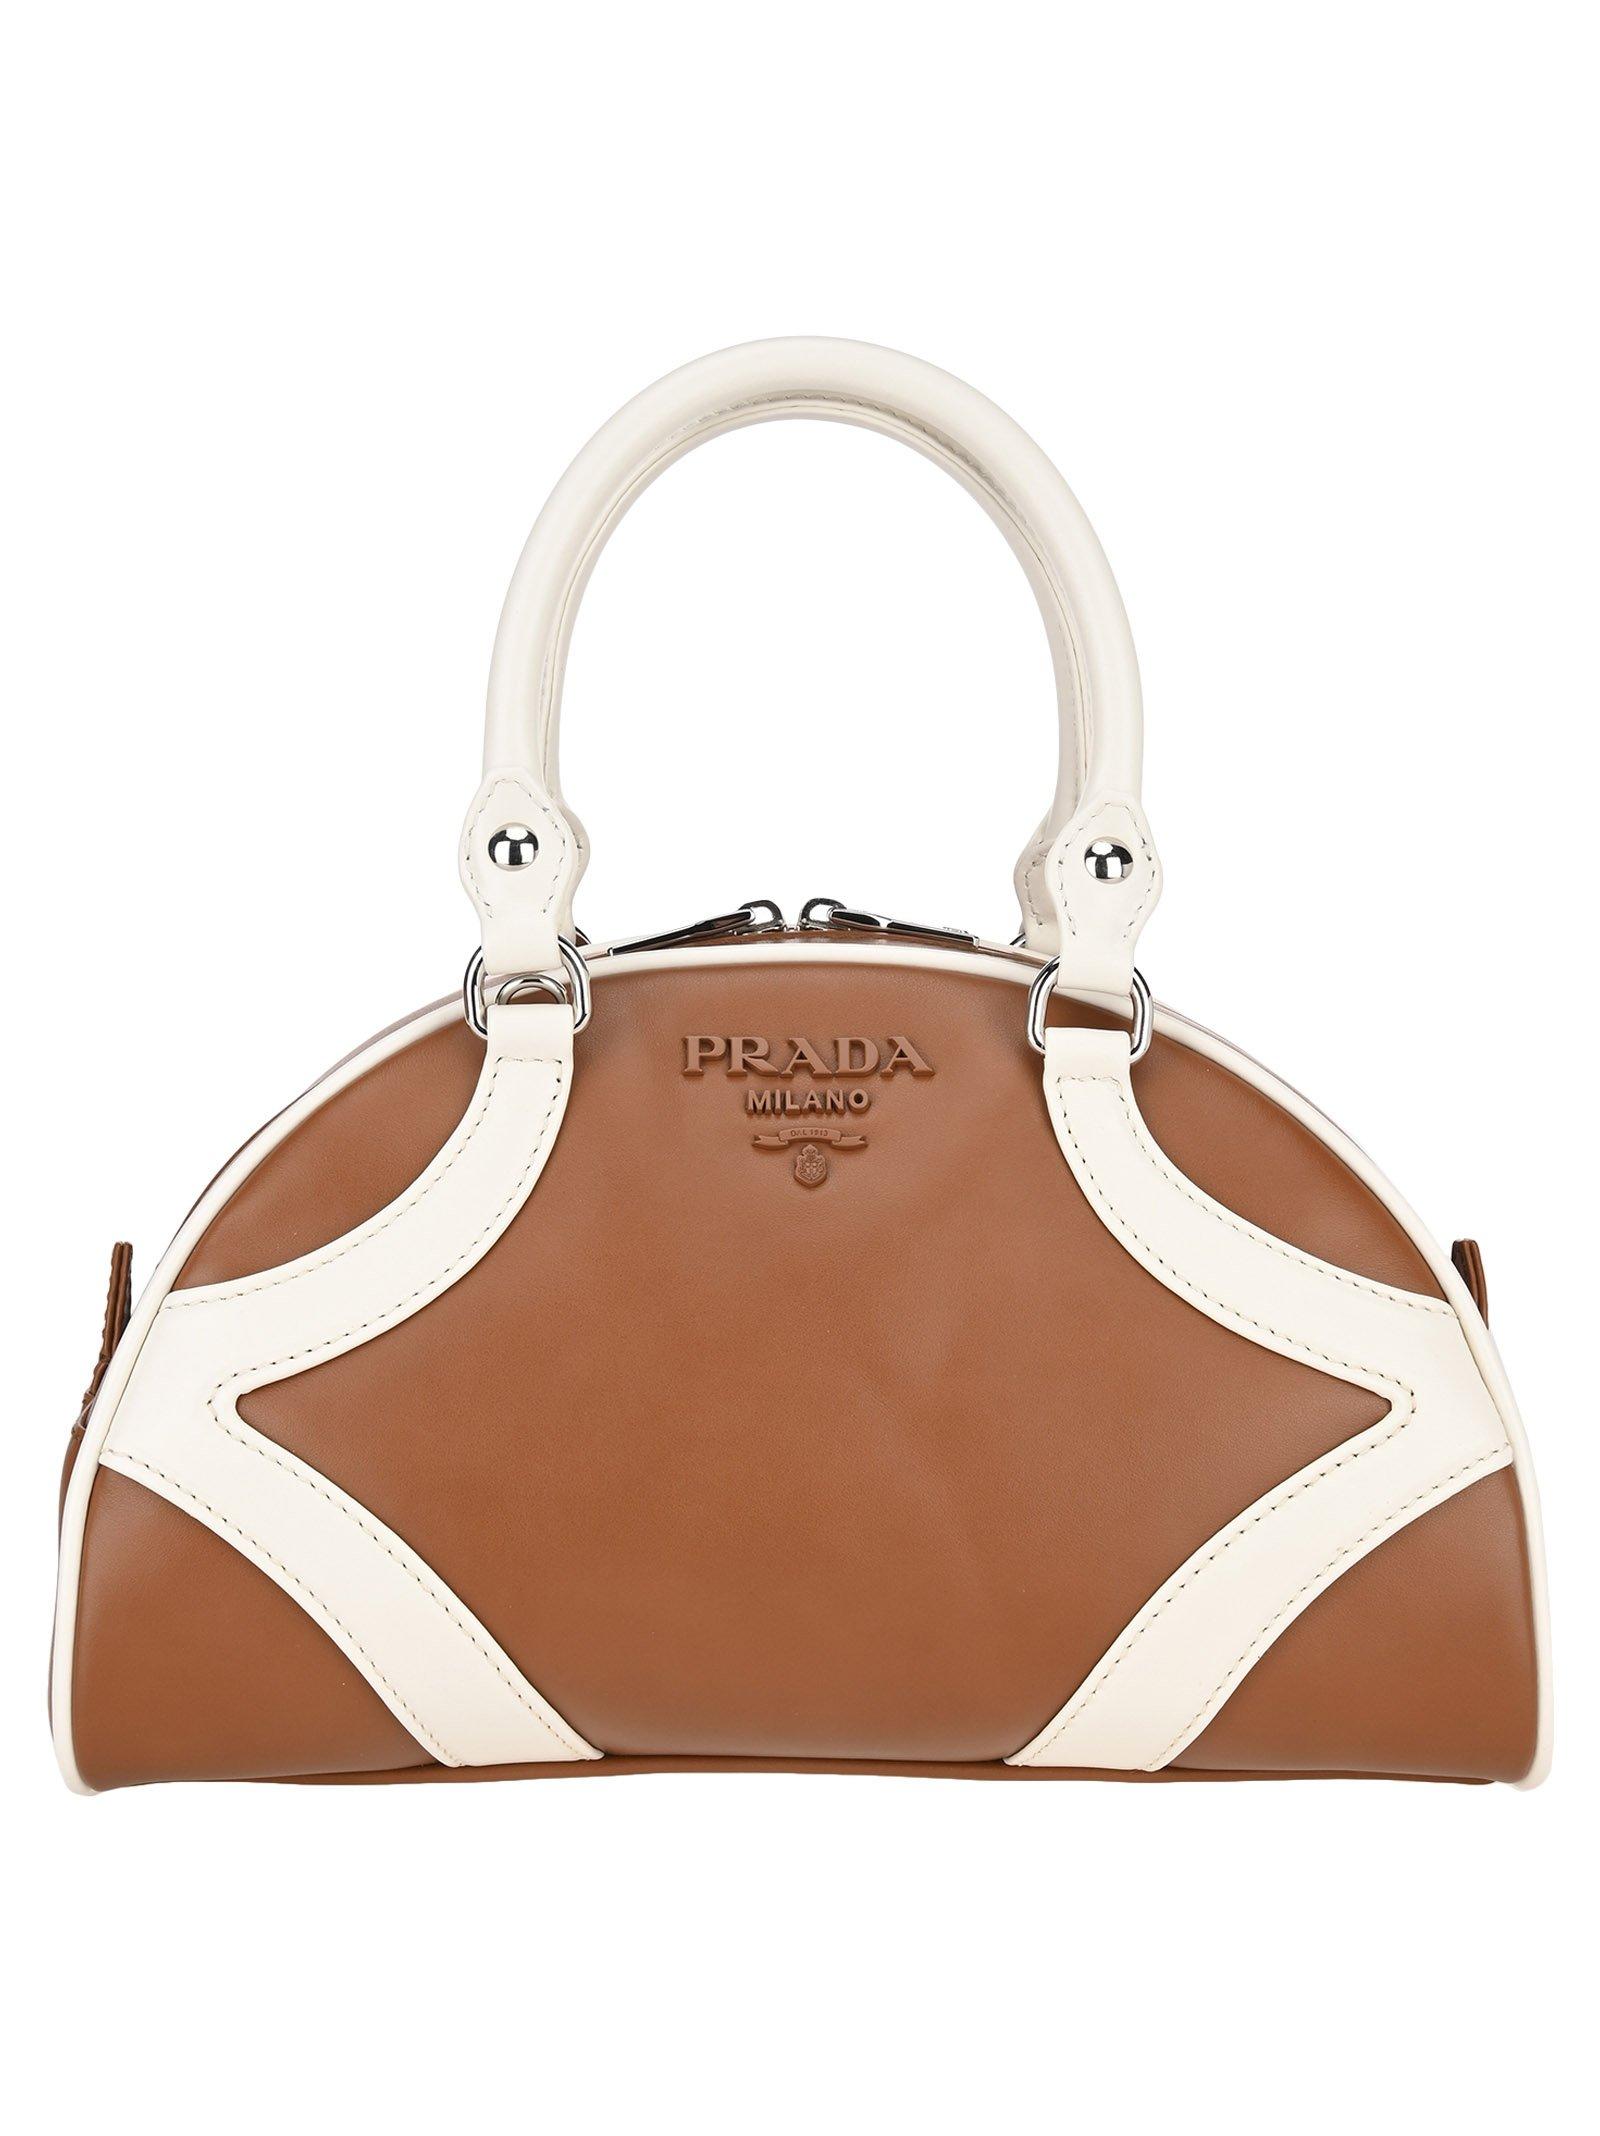 Prada Bowling Leather Handbag in Brown | Lyst